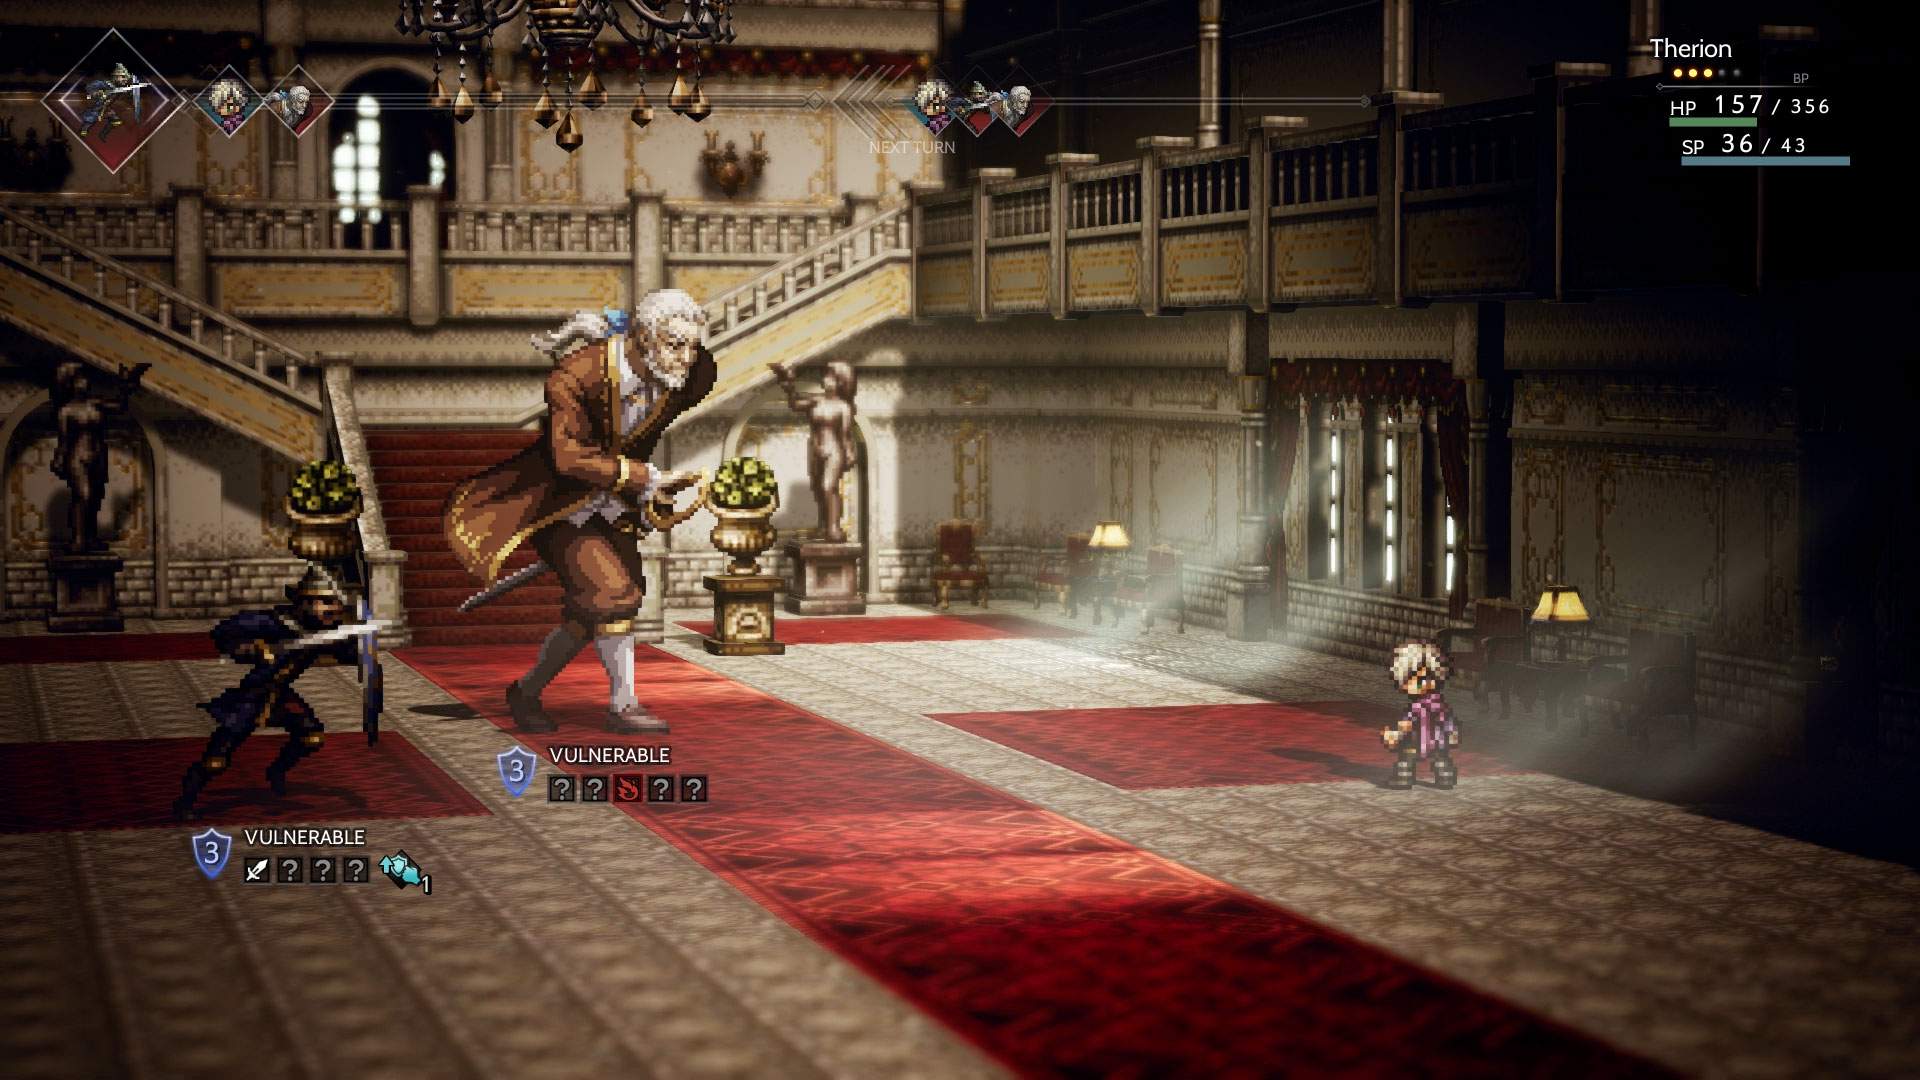 Captura de tela do combate: Therion lutando contra dois inimigos em combate por turnos em uma grande mansão.